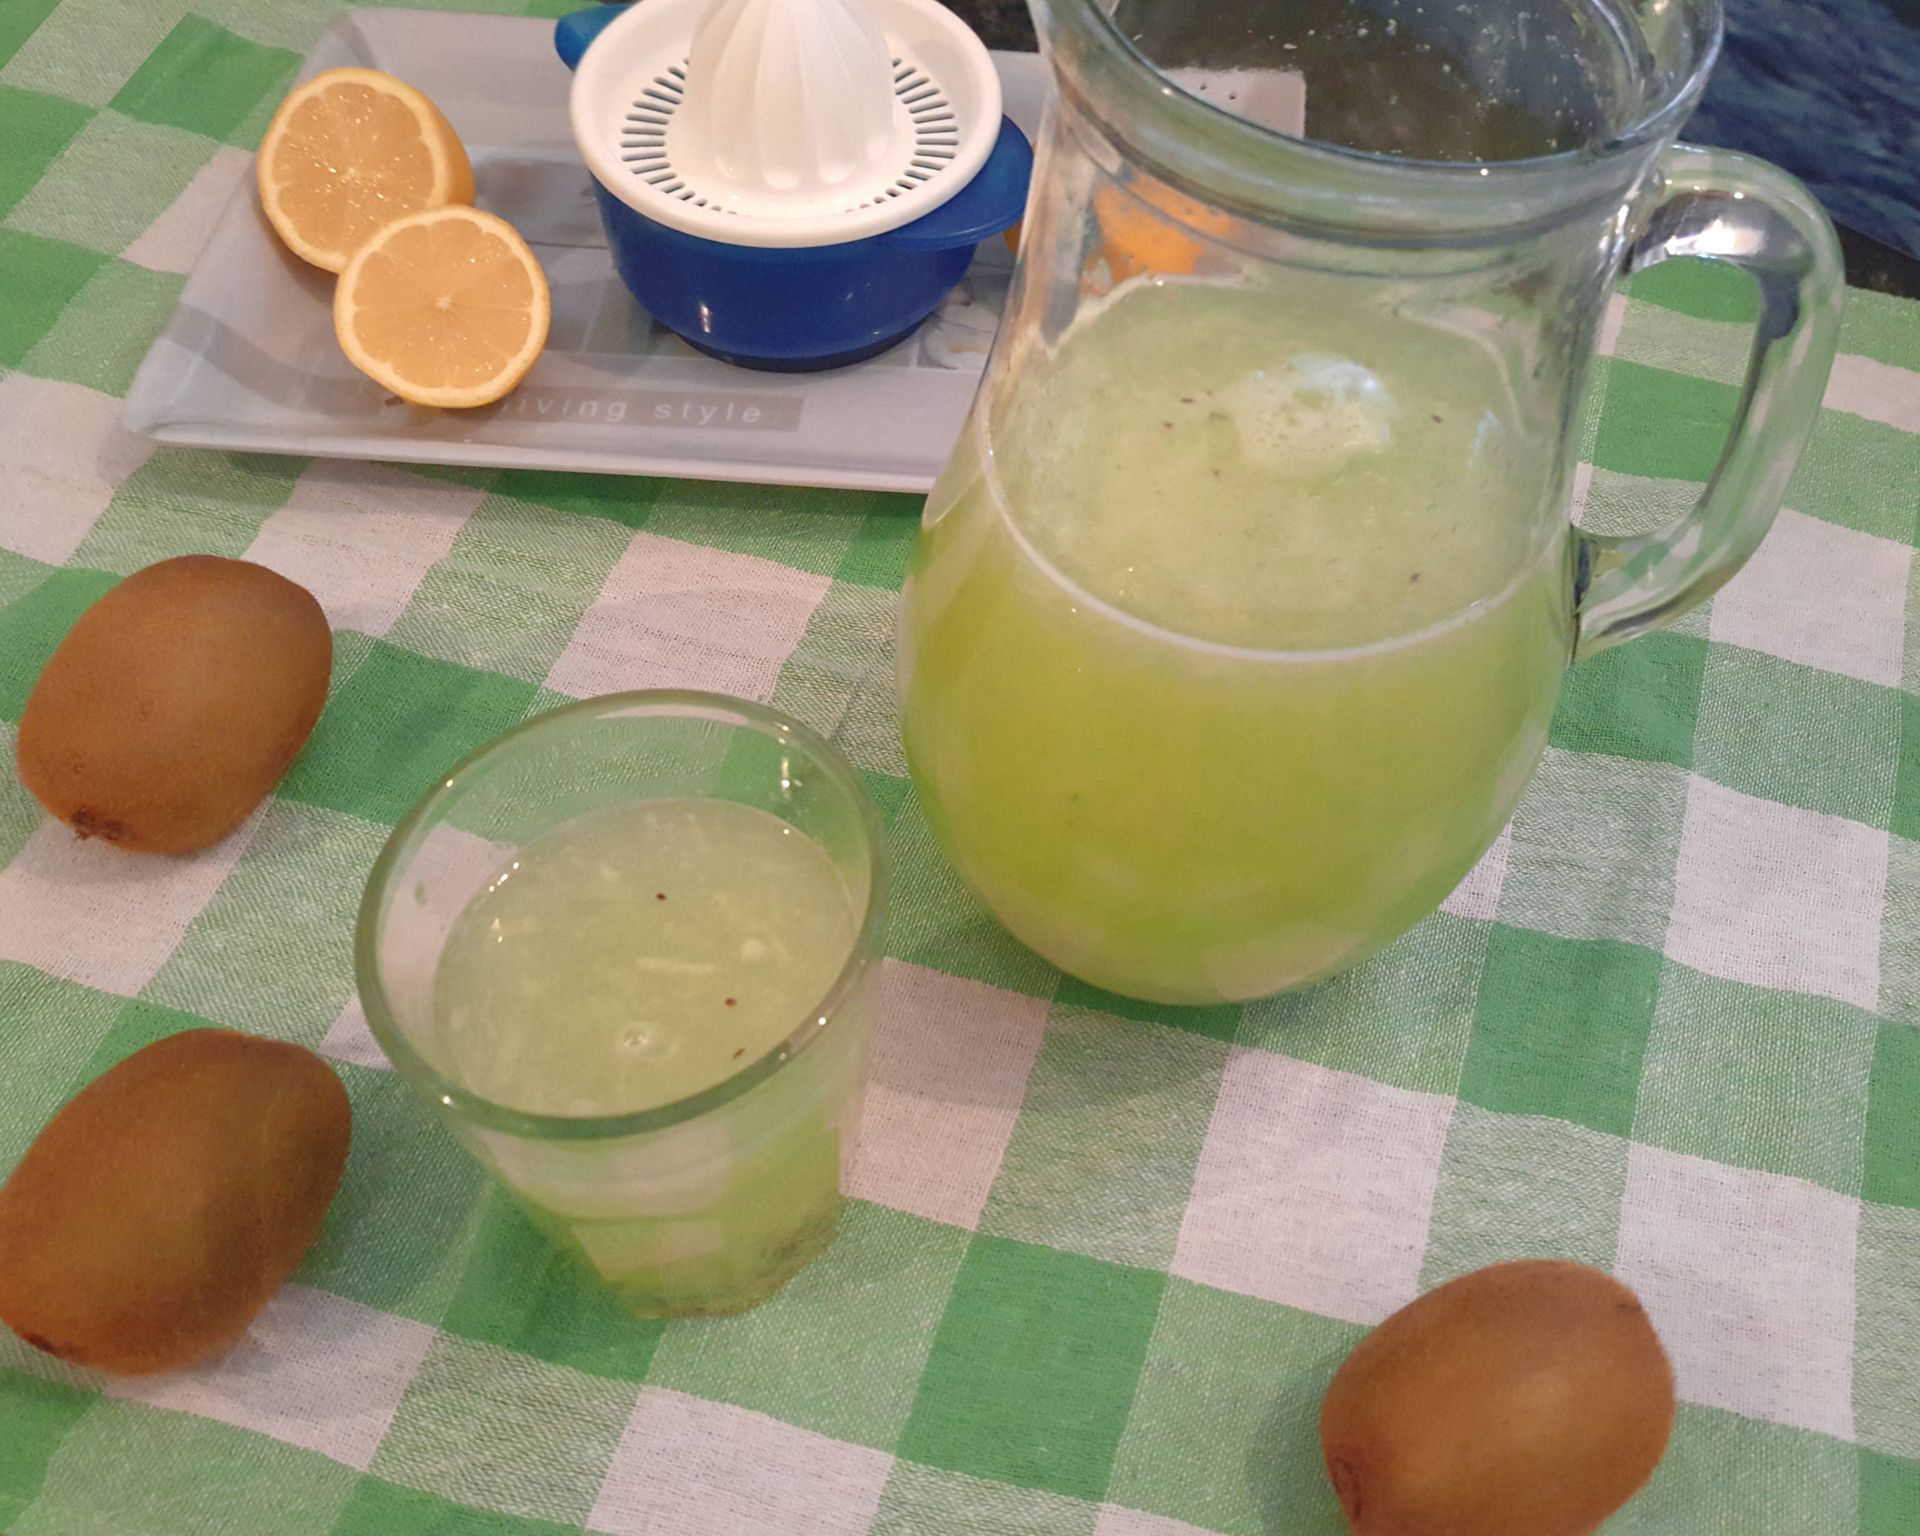 Studený letný nápoj z kiwi a citrónov. Nápoj v džbáne je zelený a sladko-kyslý.